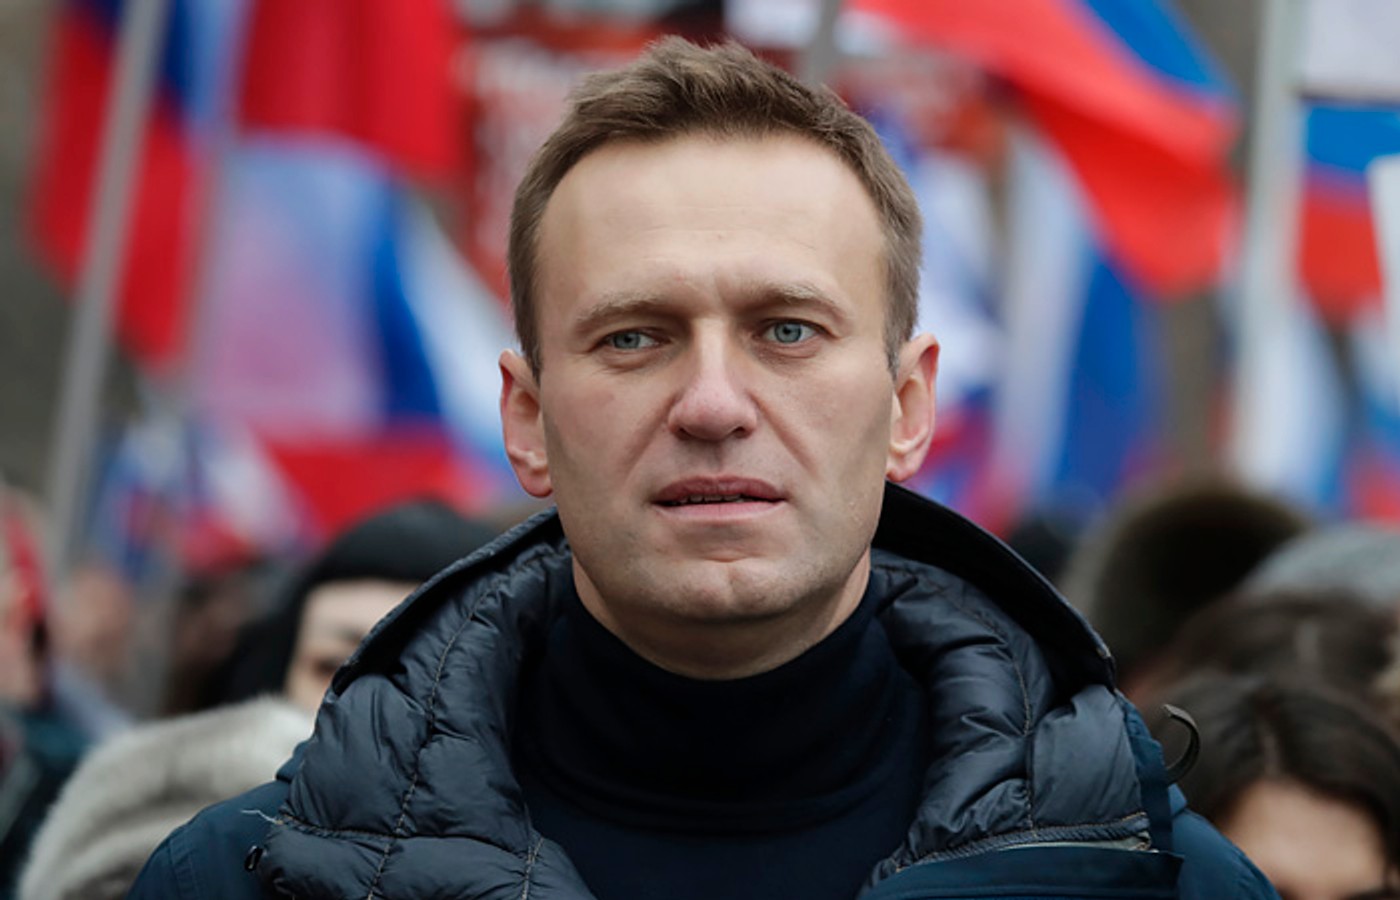 Олексію Навальному присудили вищу премію Женевського форуму з прав людини і демократії - за мужність